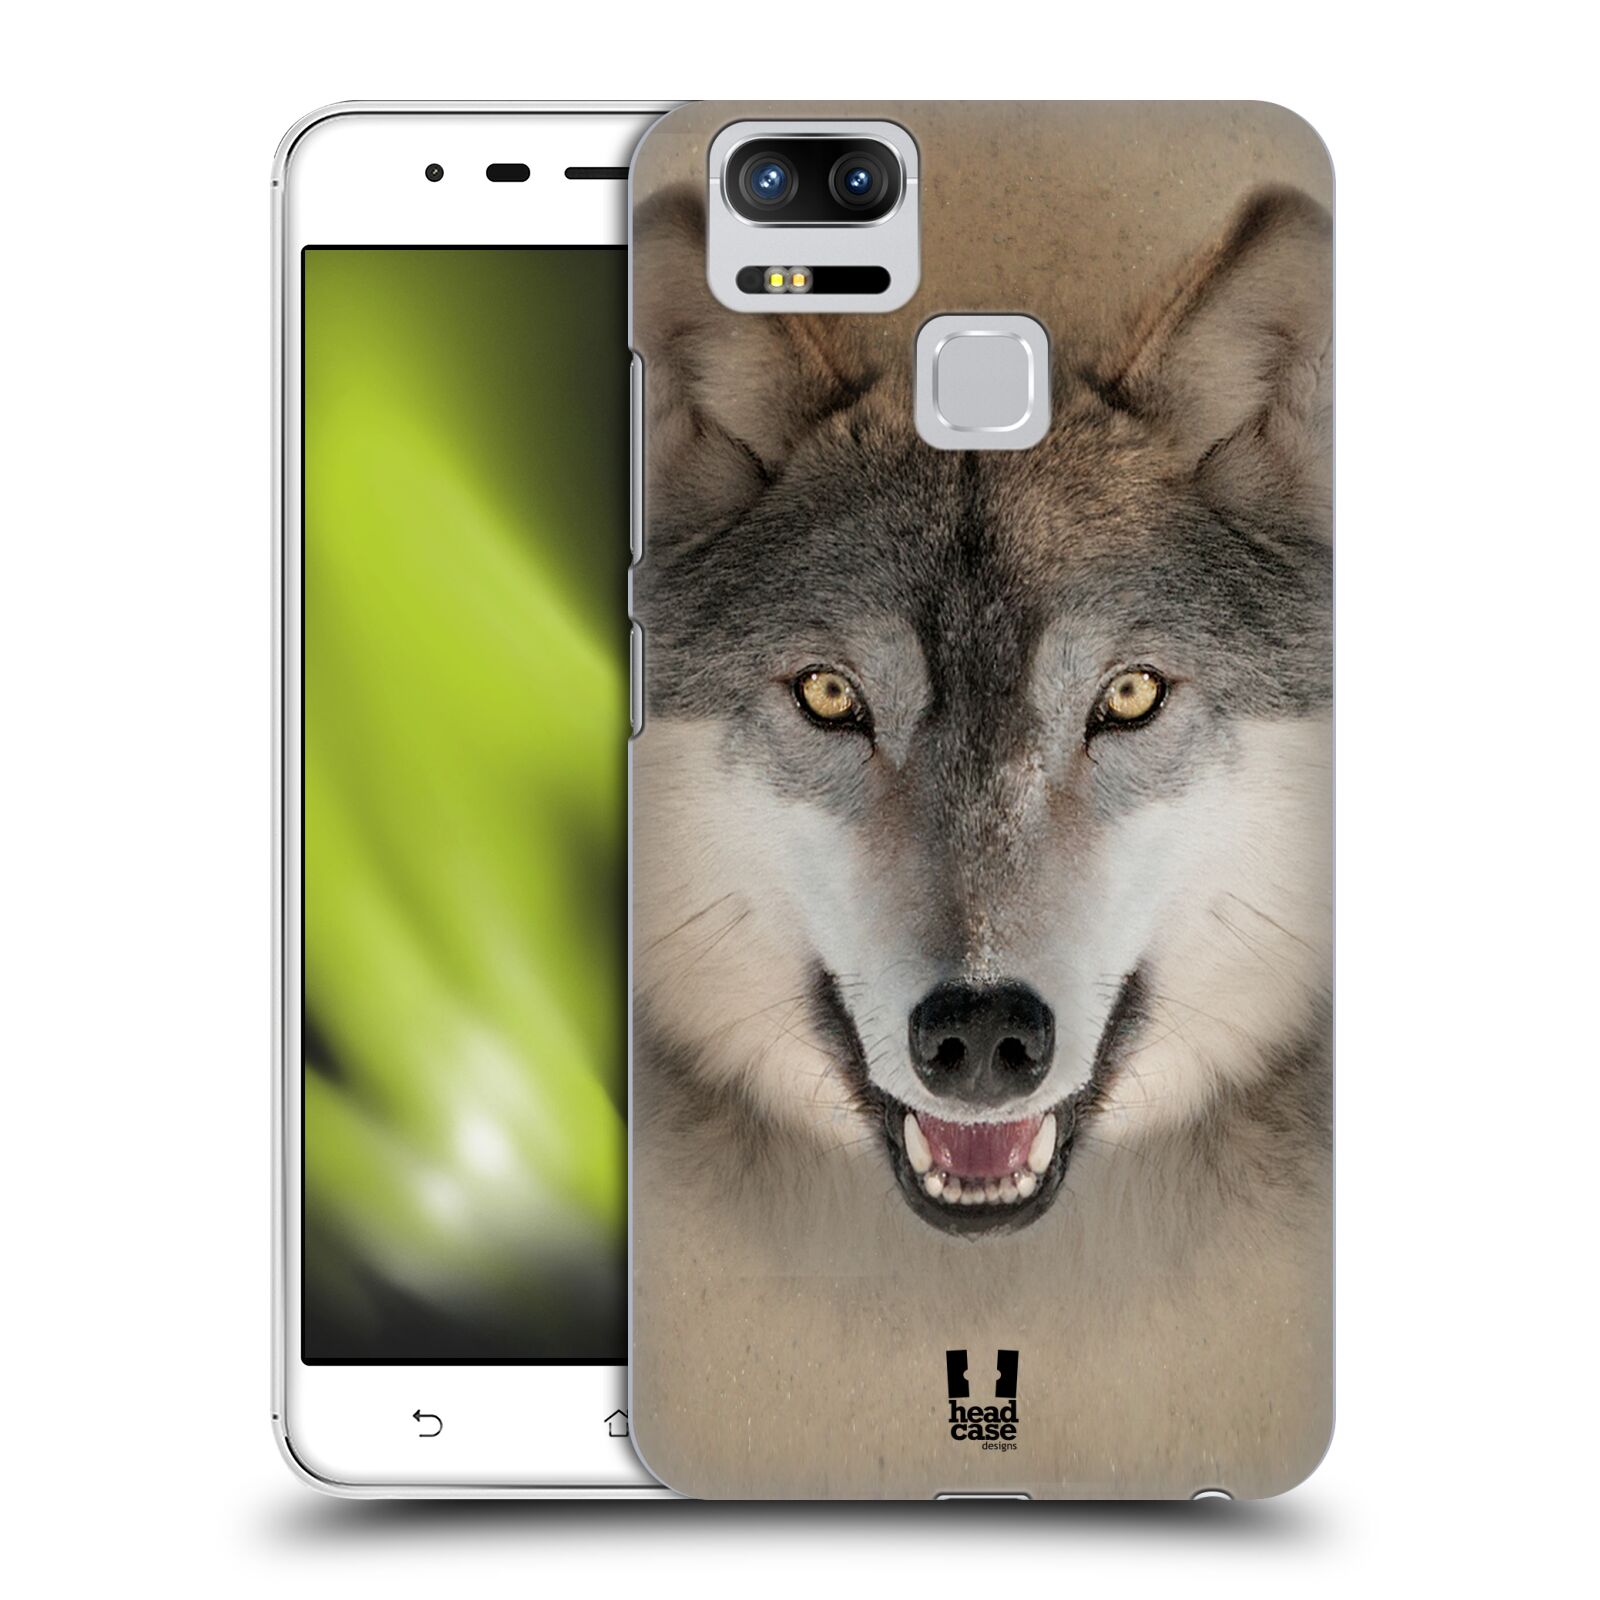 HEAD CASE plastový obal na mobil Asus Zenfone 3 Zoom ZE553KL vzor Zvířecí tváře 2 vlk šedý